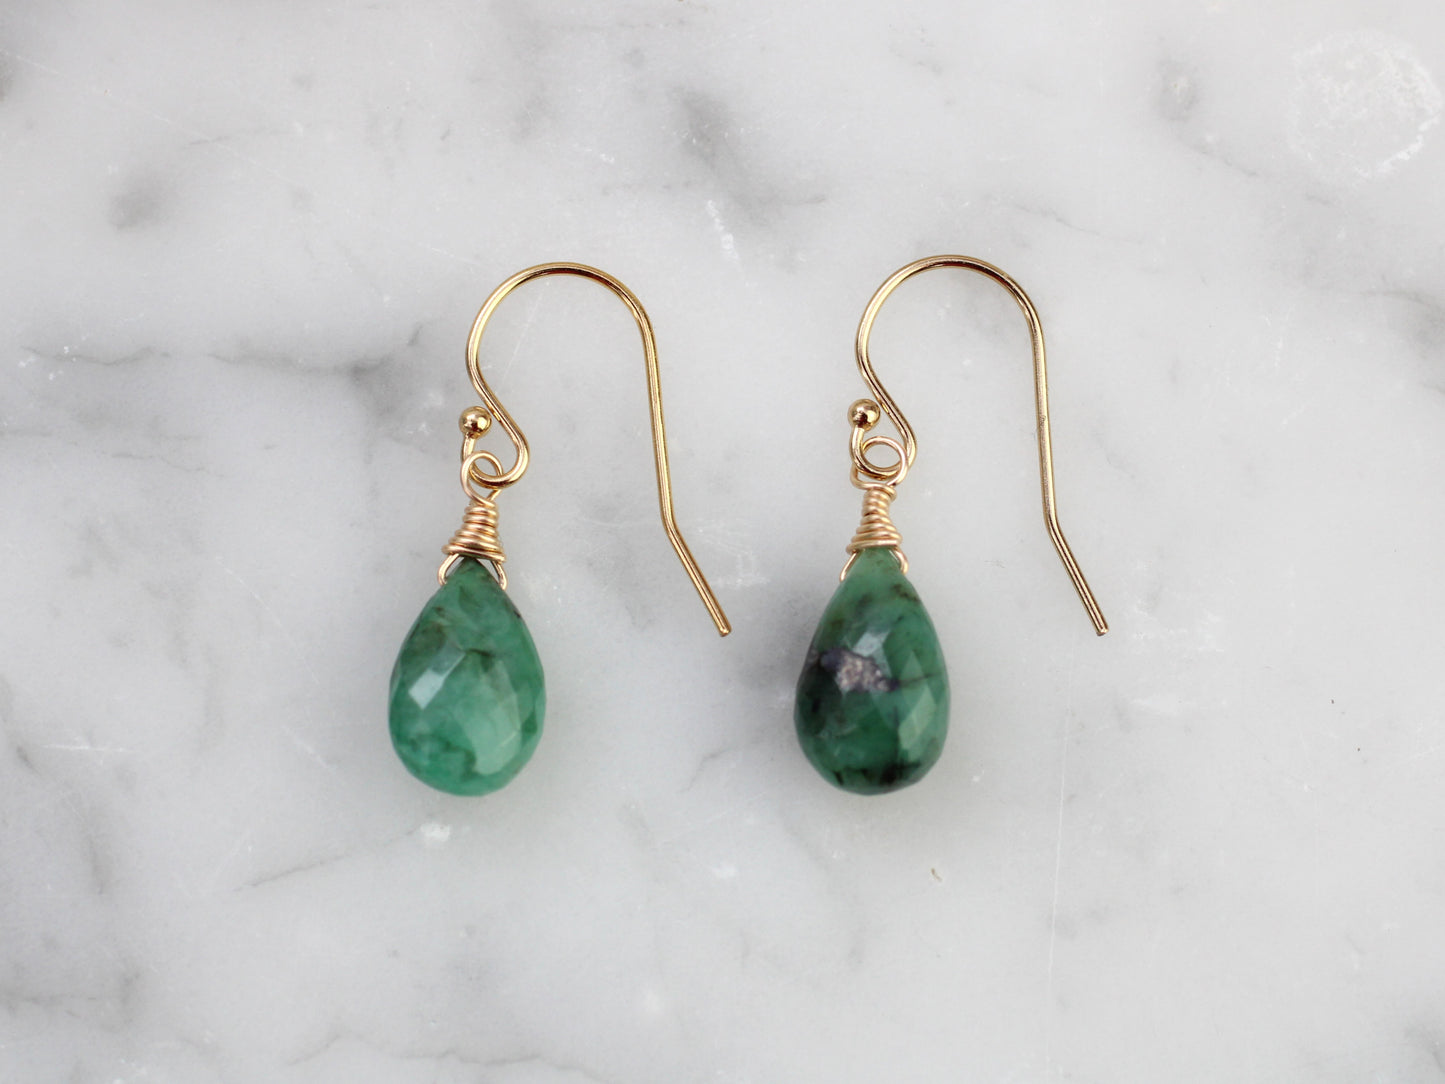 Emerald drop earrings in silver or gold.